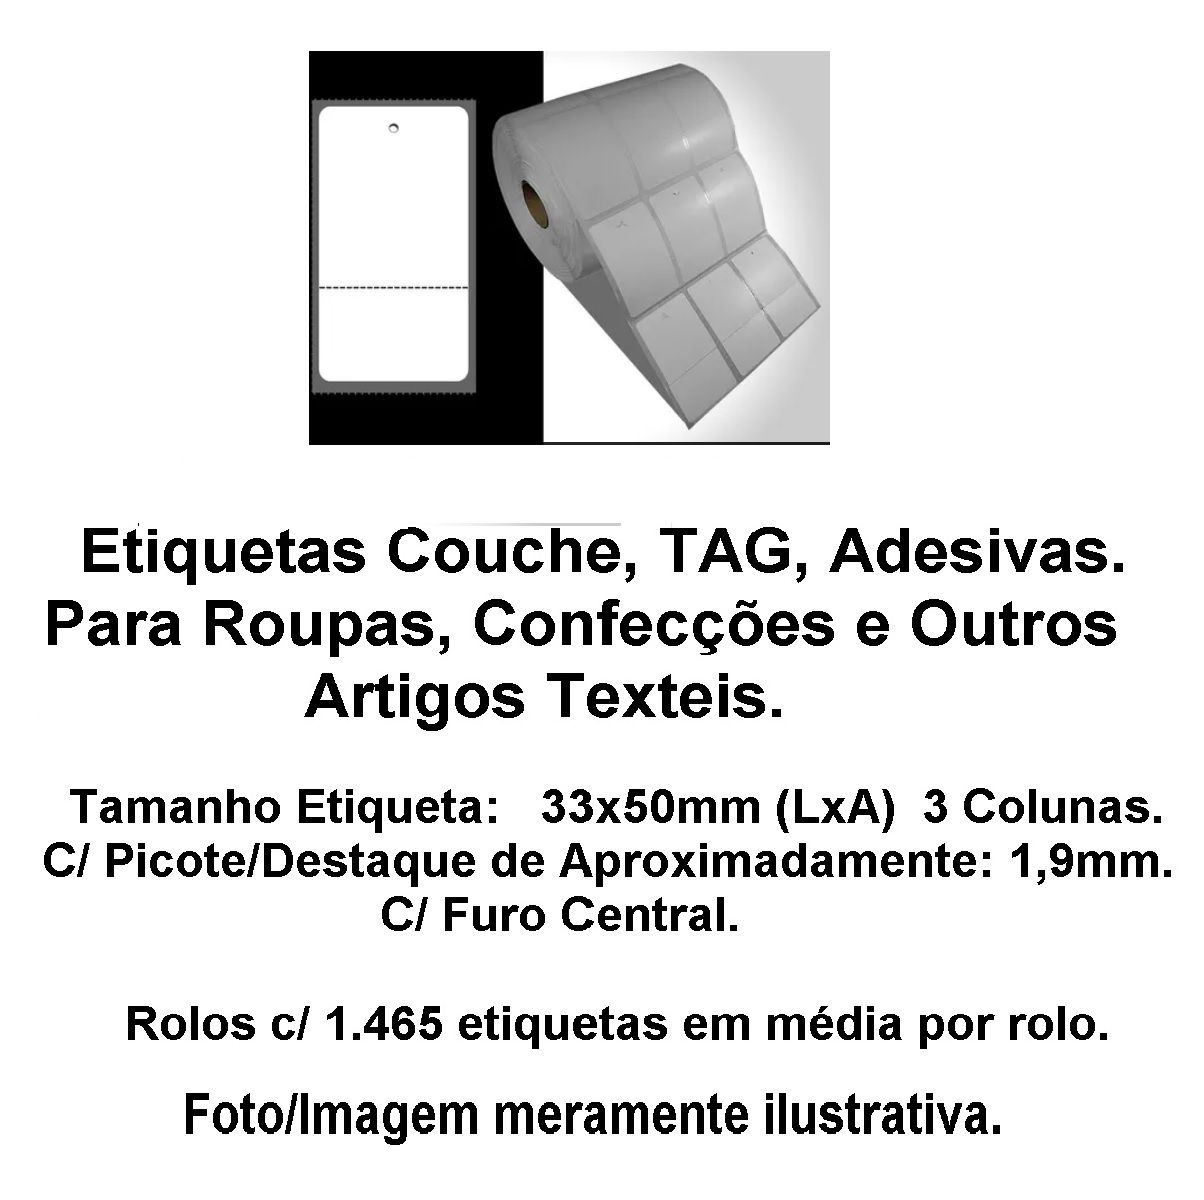 Etiqueta Adesiva, TAG , Picote p/ Roupas, Confecção, Vestuário, Artig -  R.A2print Etiquetas & Ribbons